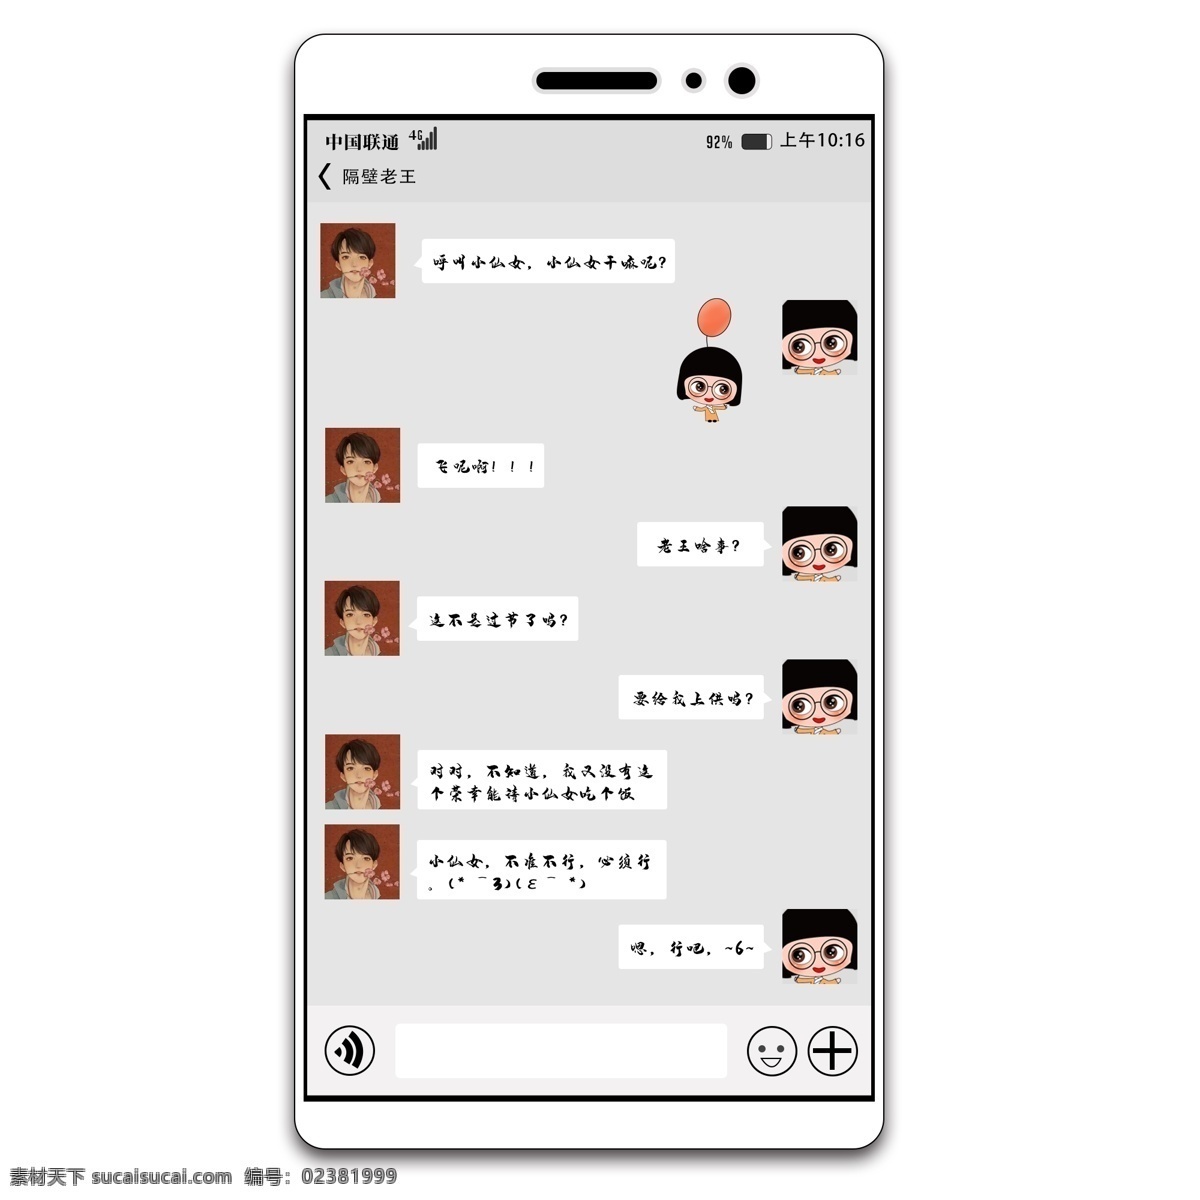 微 信 手机 对话框 微信 微信对话 手机对话 情侣对话 手机模板 手机页面模板 手机页面 背景 分层